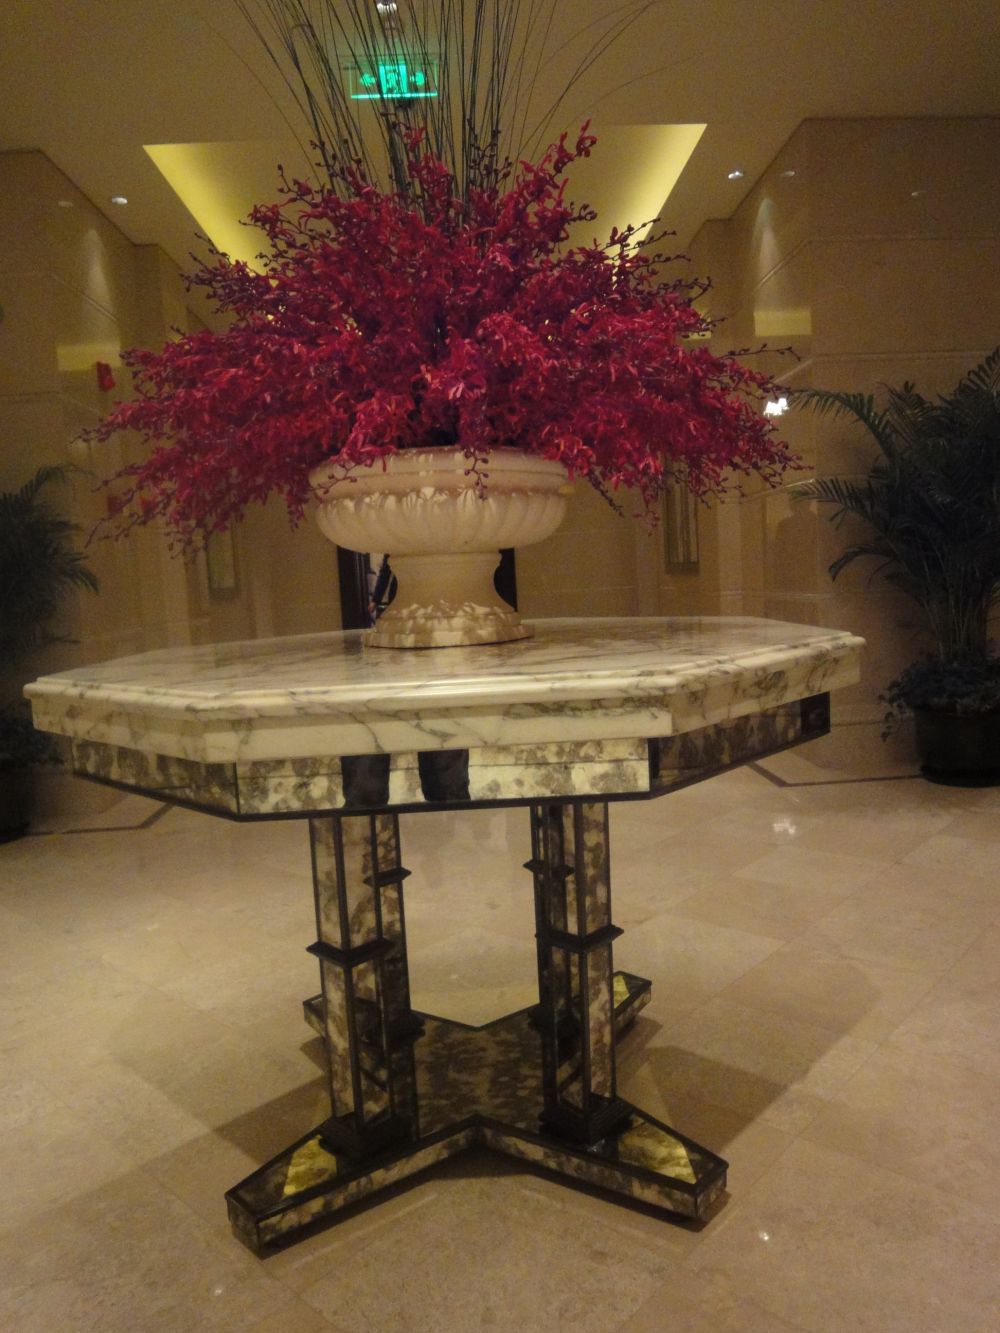 上海华尔道夫酒店(The Waldorf Astoria OnTheBund)(HBA)10.9第10页更新_DSC04268.jpg